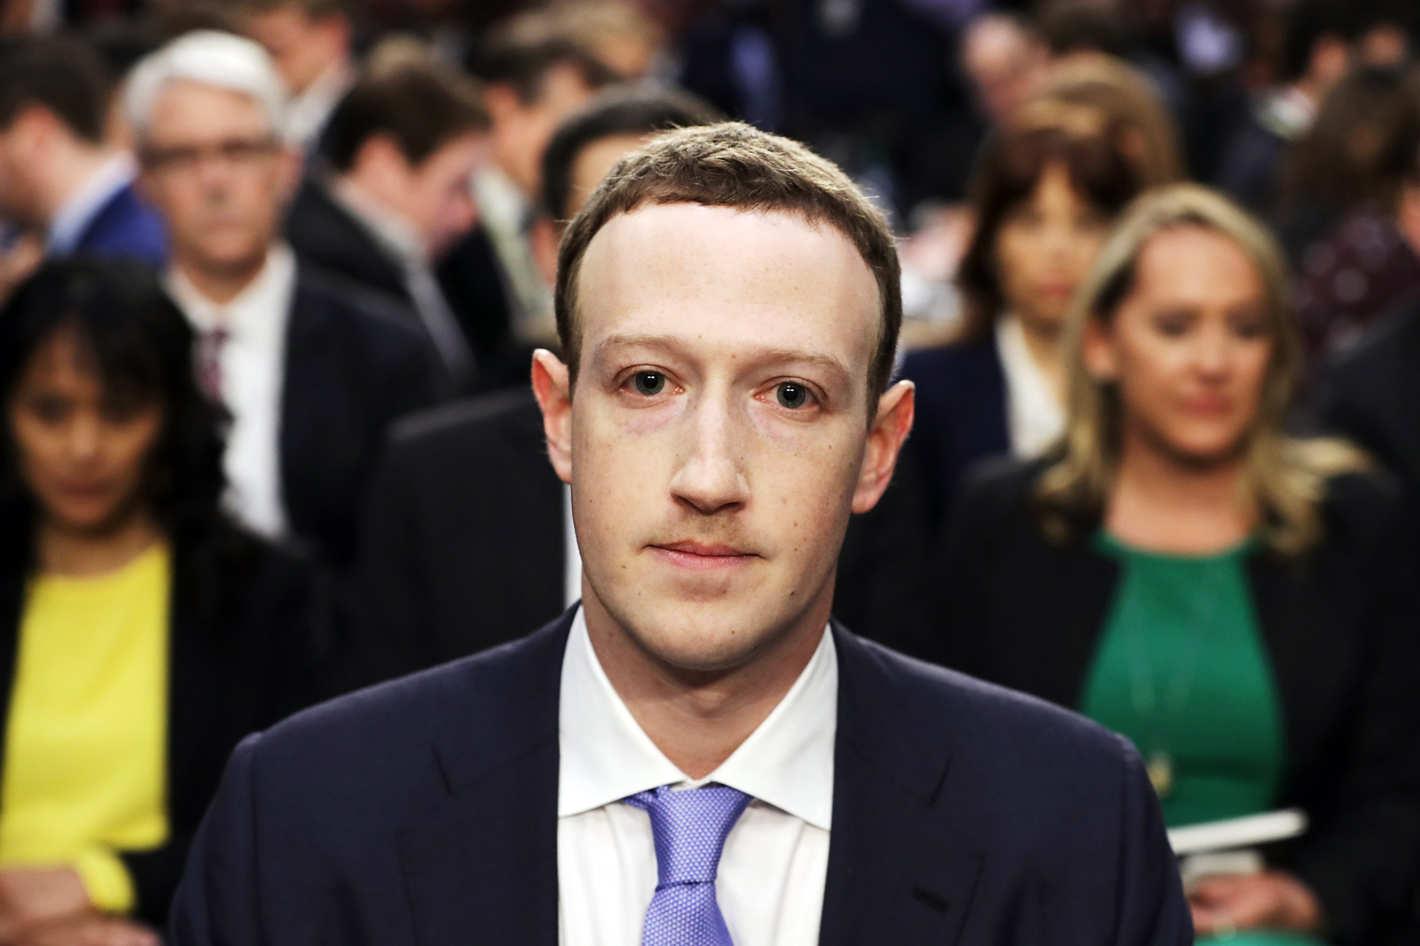 Mark Zuckerberg ABD Senatosu’nda İfade Verdi: Benim Hatamdı, Özür Dilerim